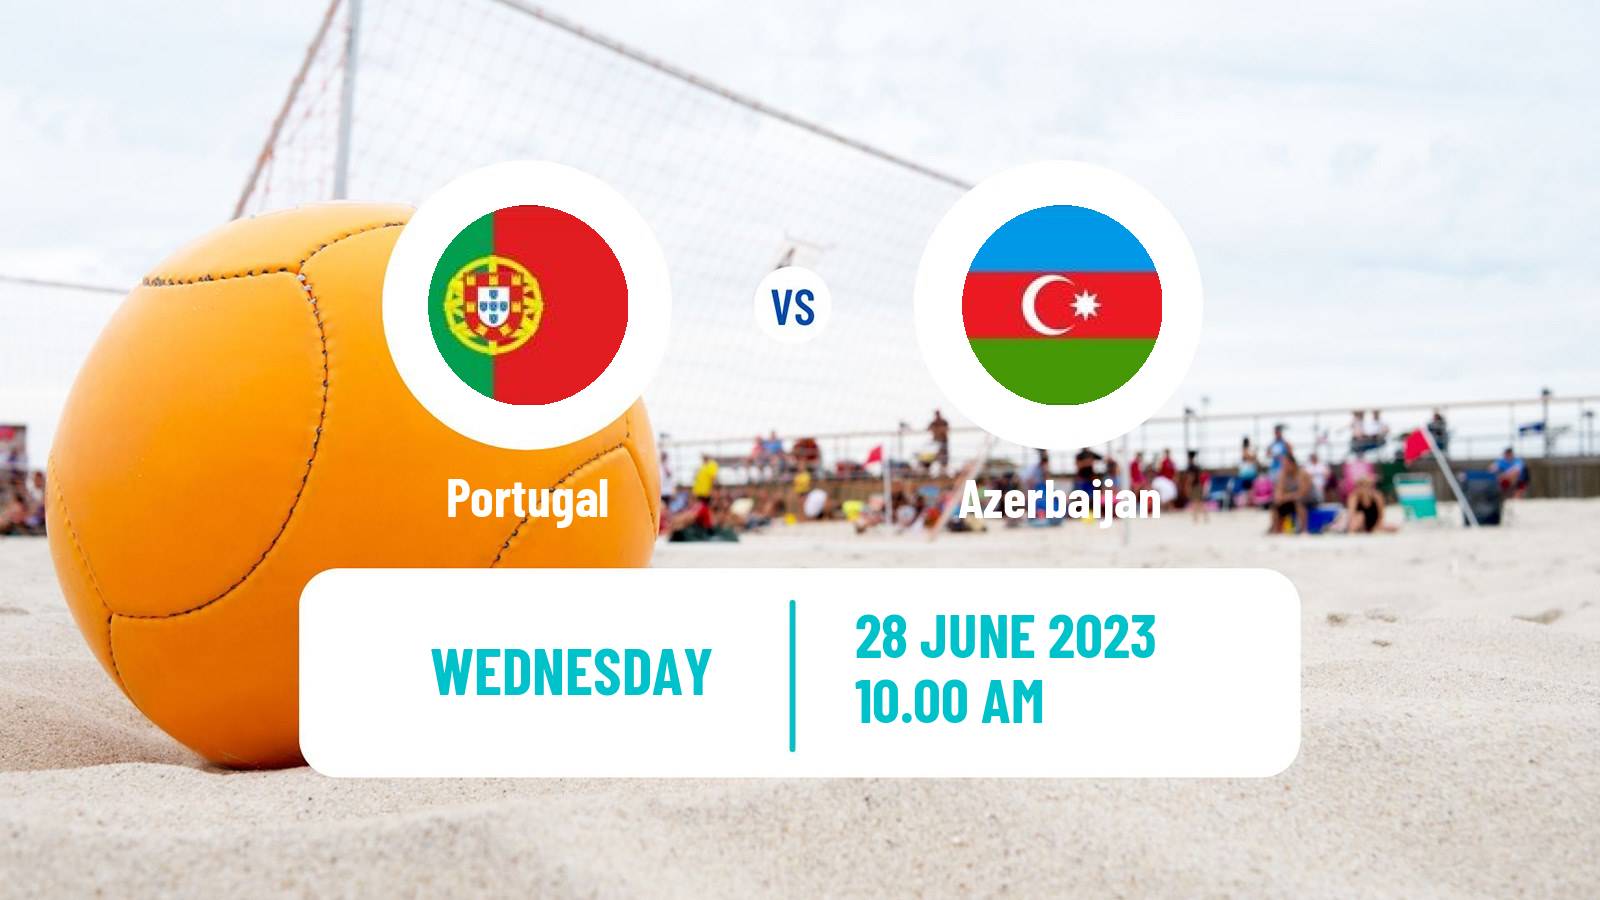 Beach soccer European Games Portugal - Azerbaijan